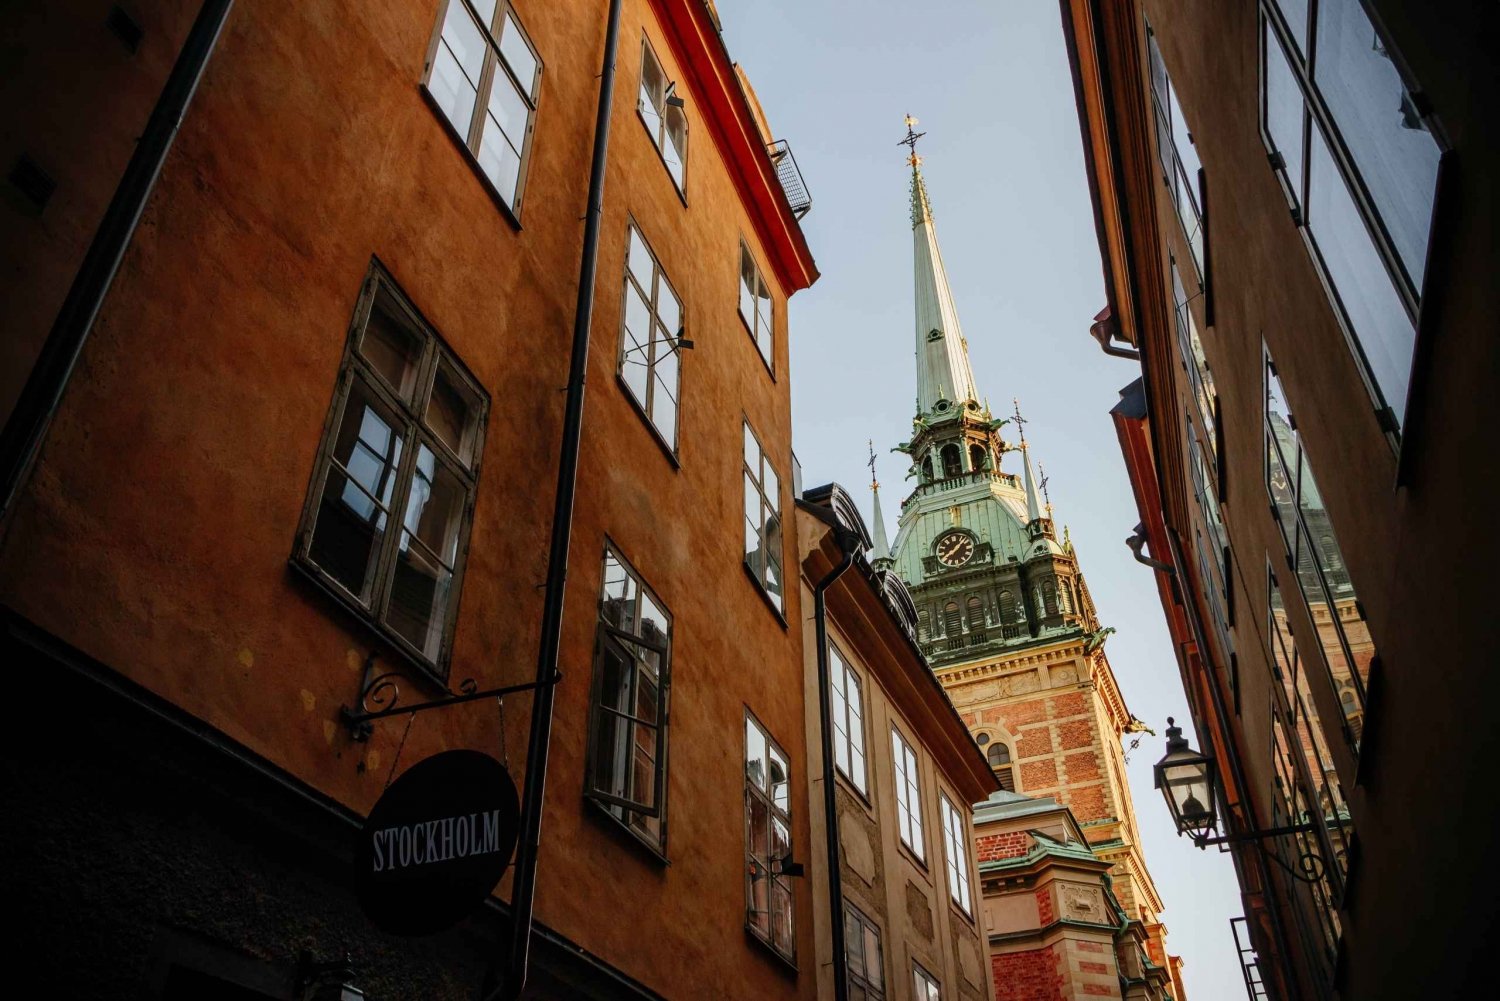 Estocolmo: Visita histórica a Gamla Stan con Fika incluido